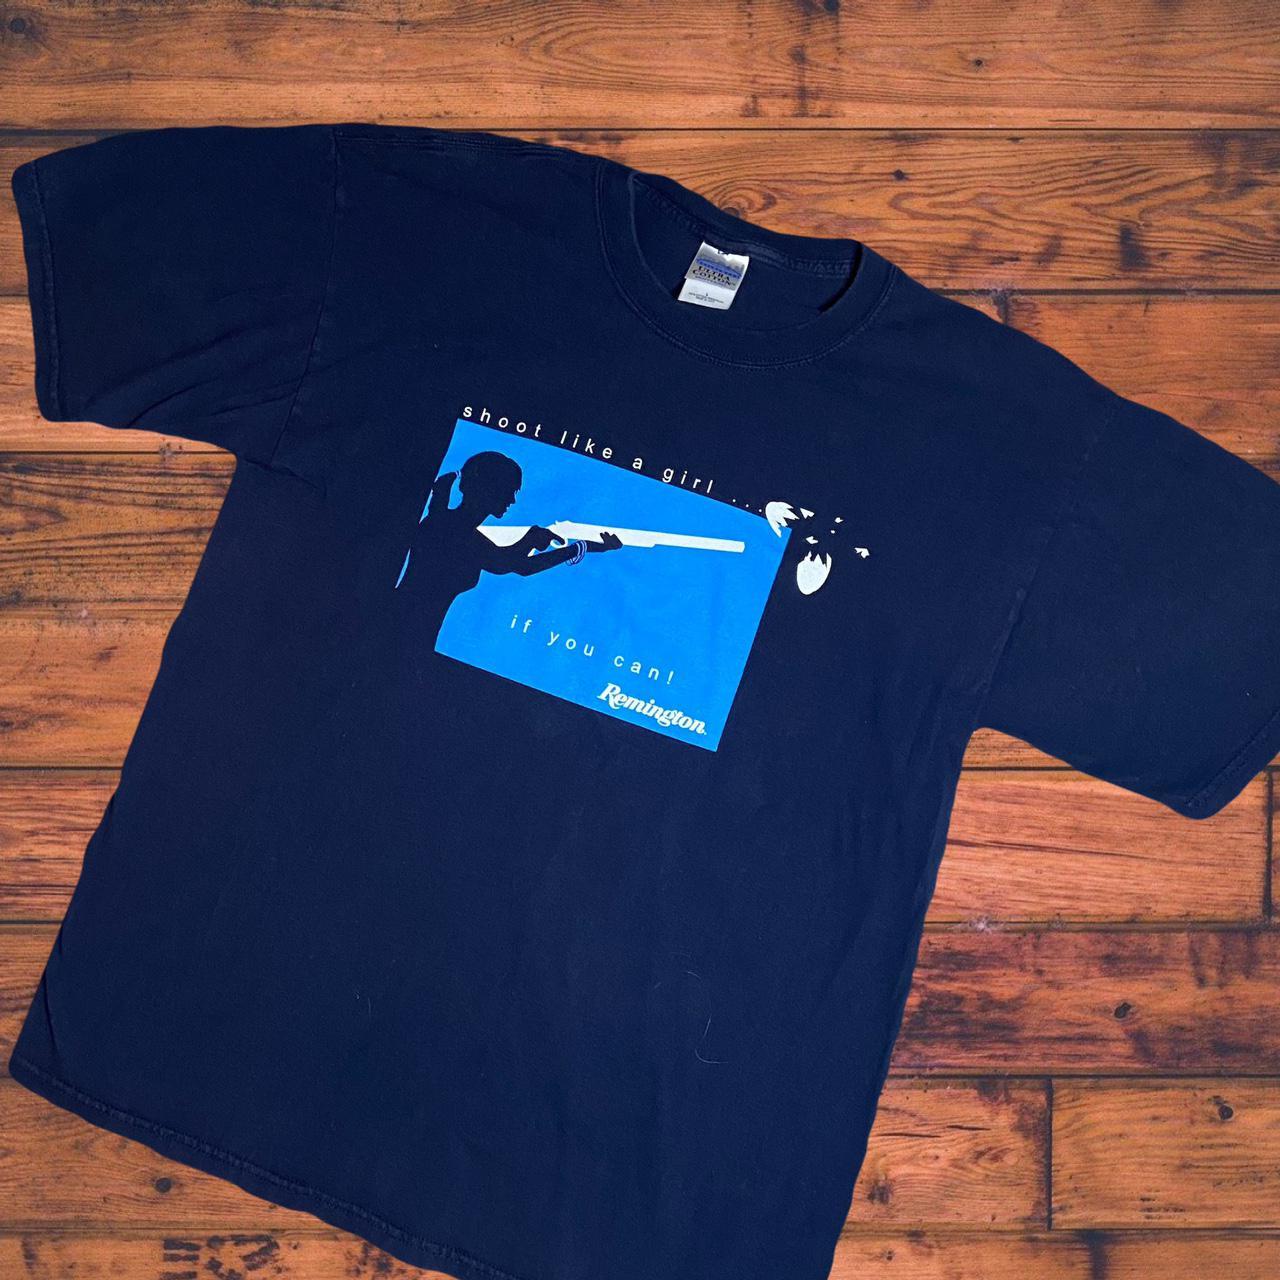 Product Image 1 - Gildan tee shirt 
Remington guns
“Shoot